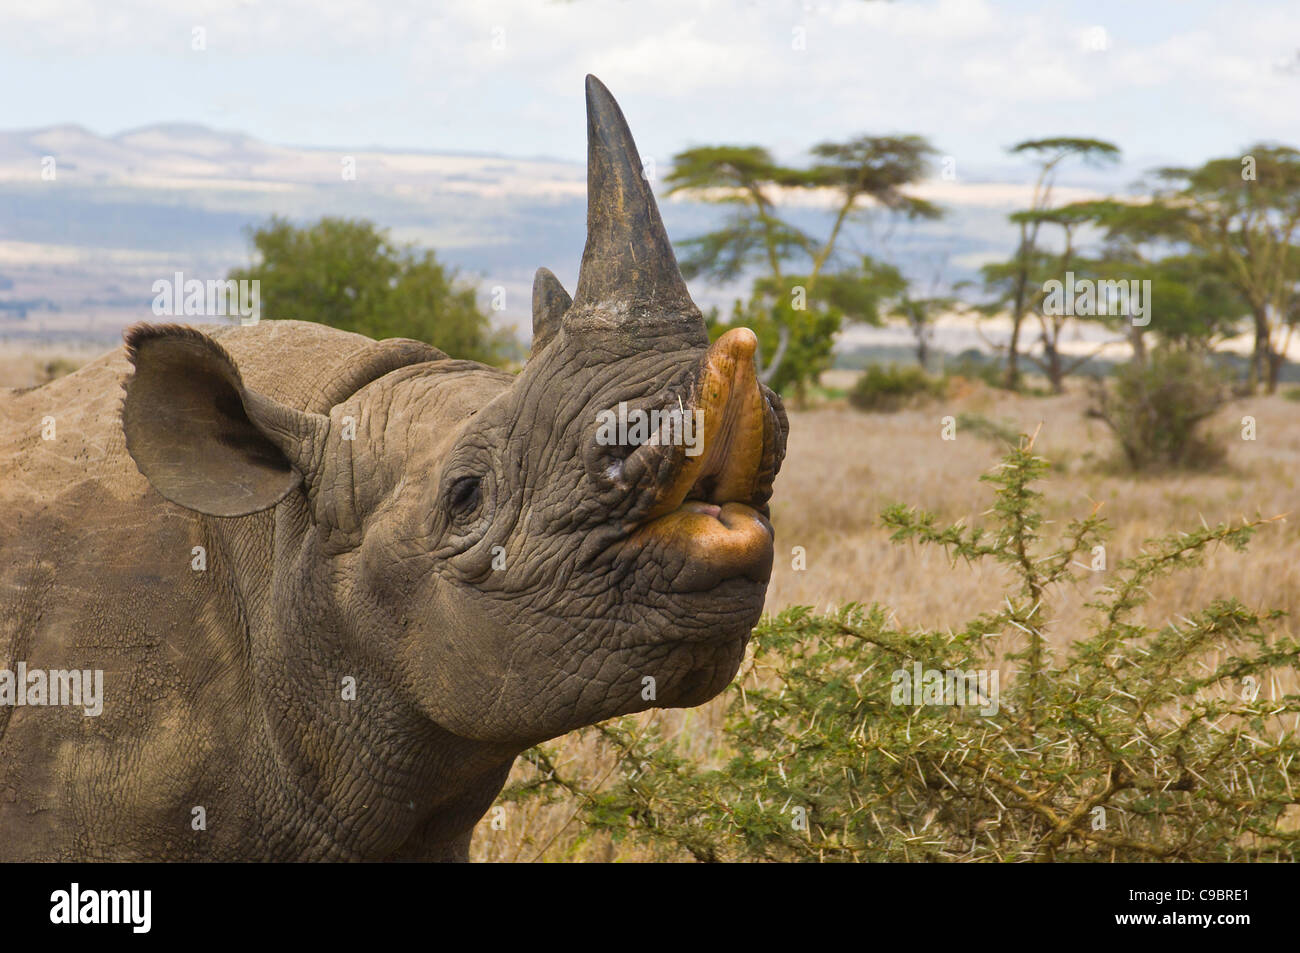 Le rhinocéros noir (Diceros b. michaeli), également connu sous le nom de hook-lipped rhino, Downs Lewa Wildlife Conservancy, au Kenya. Banque D'Images